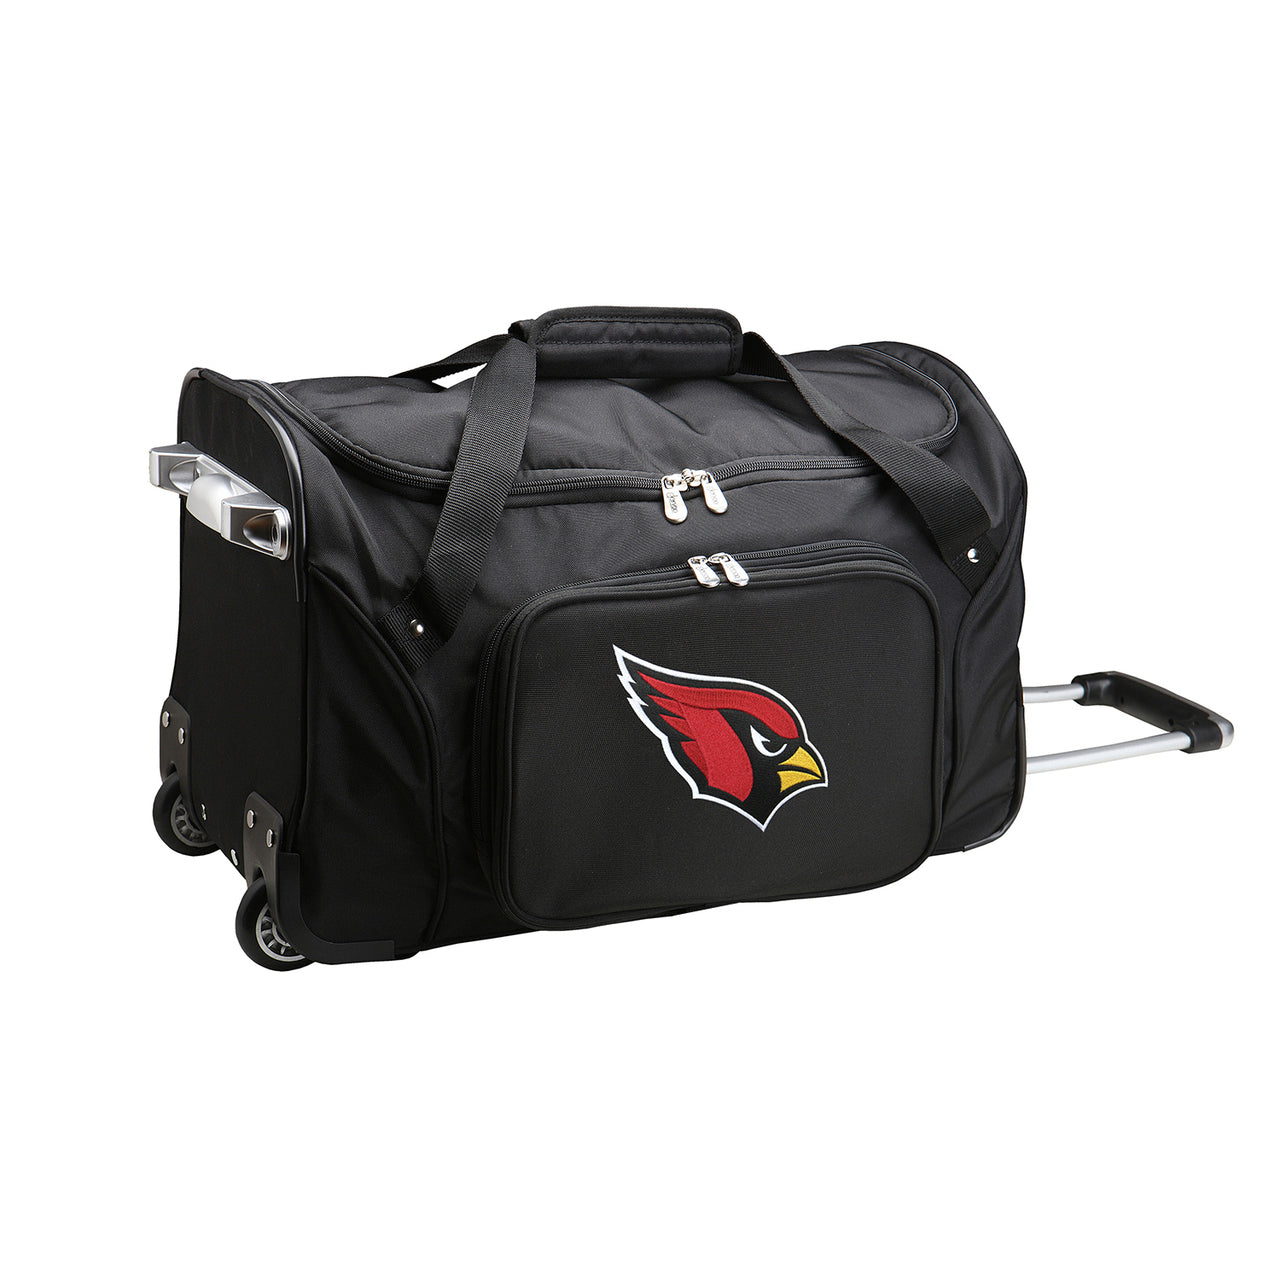 Arizona Cardinals Luggage | NFL Arizona Cardinals Wheeled Carry On Luggage